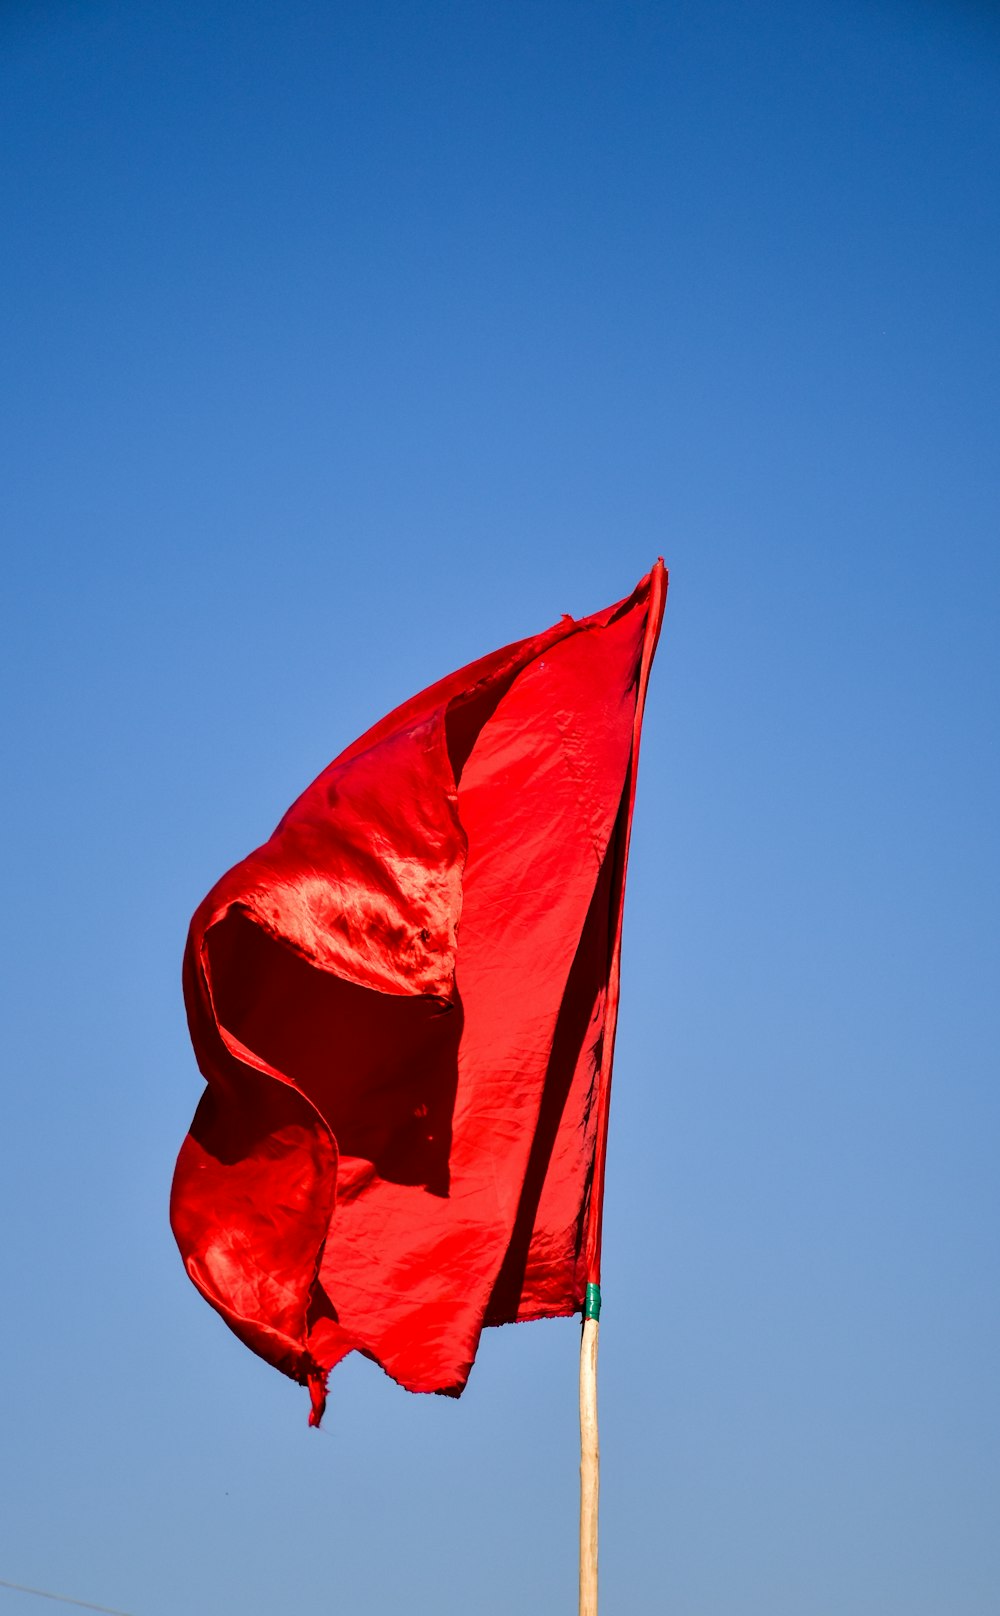 bandiera rossa sotto il cielo blu durante il giorno